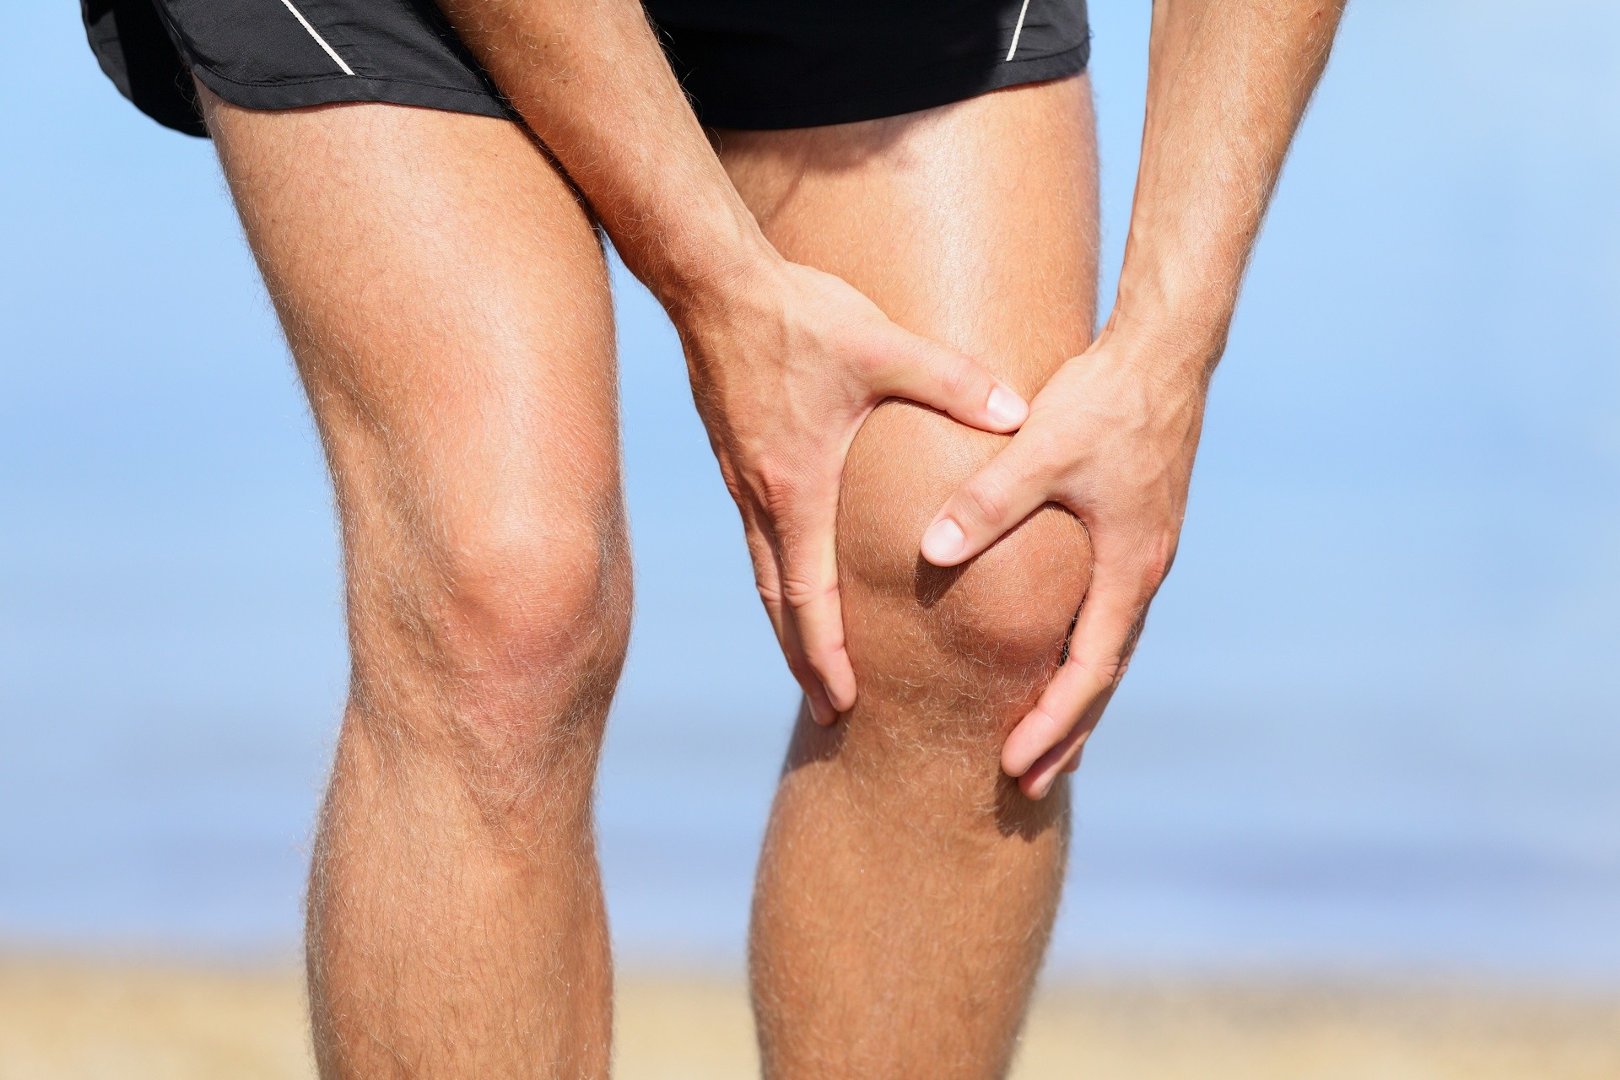 Ból kolana po bieganiu – przyczyny i leczenie. Profilaktyka kolana  biegacza, zwichnięcia kolana i innych kontuzji stawu kolanowego | Strona  Zdrowia